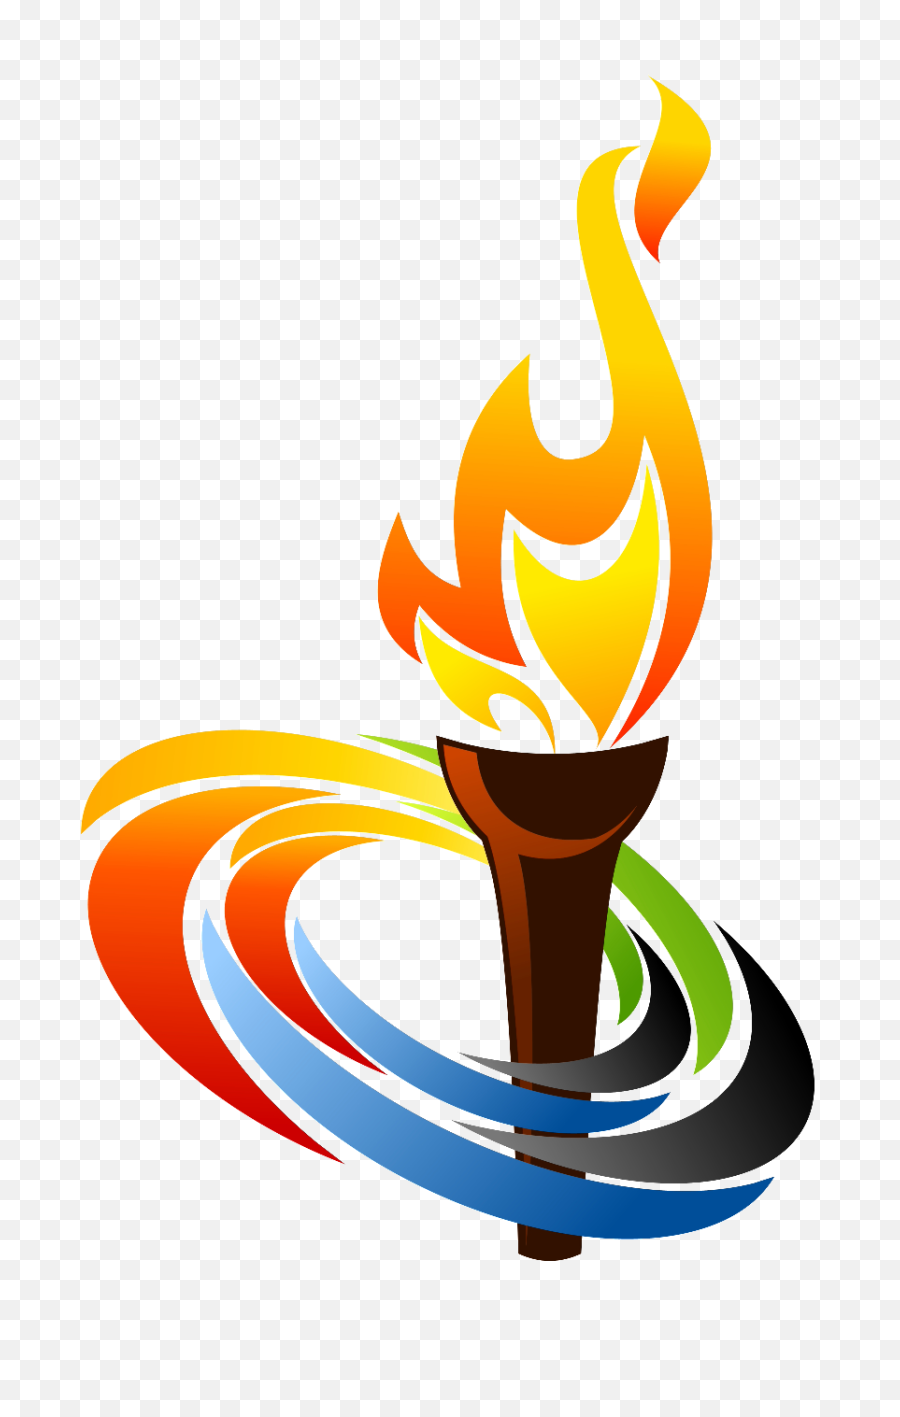 Олимпийский факел. Факел Олимпийских игр. Олимпийский огонь символ. Факел олимпийского огня. Факел эмблема.